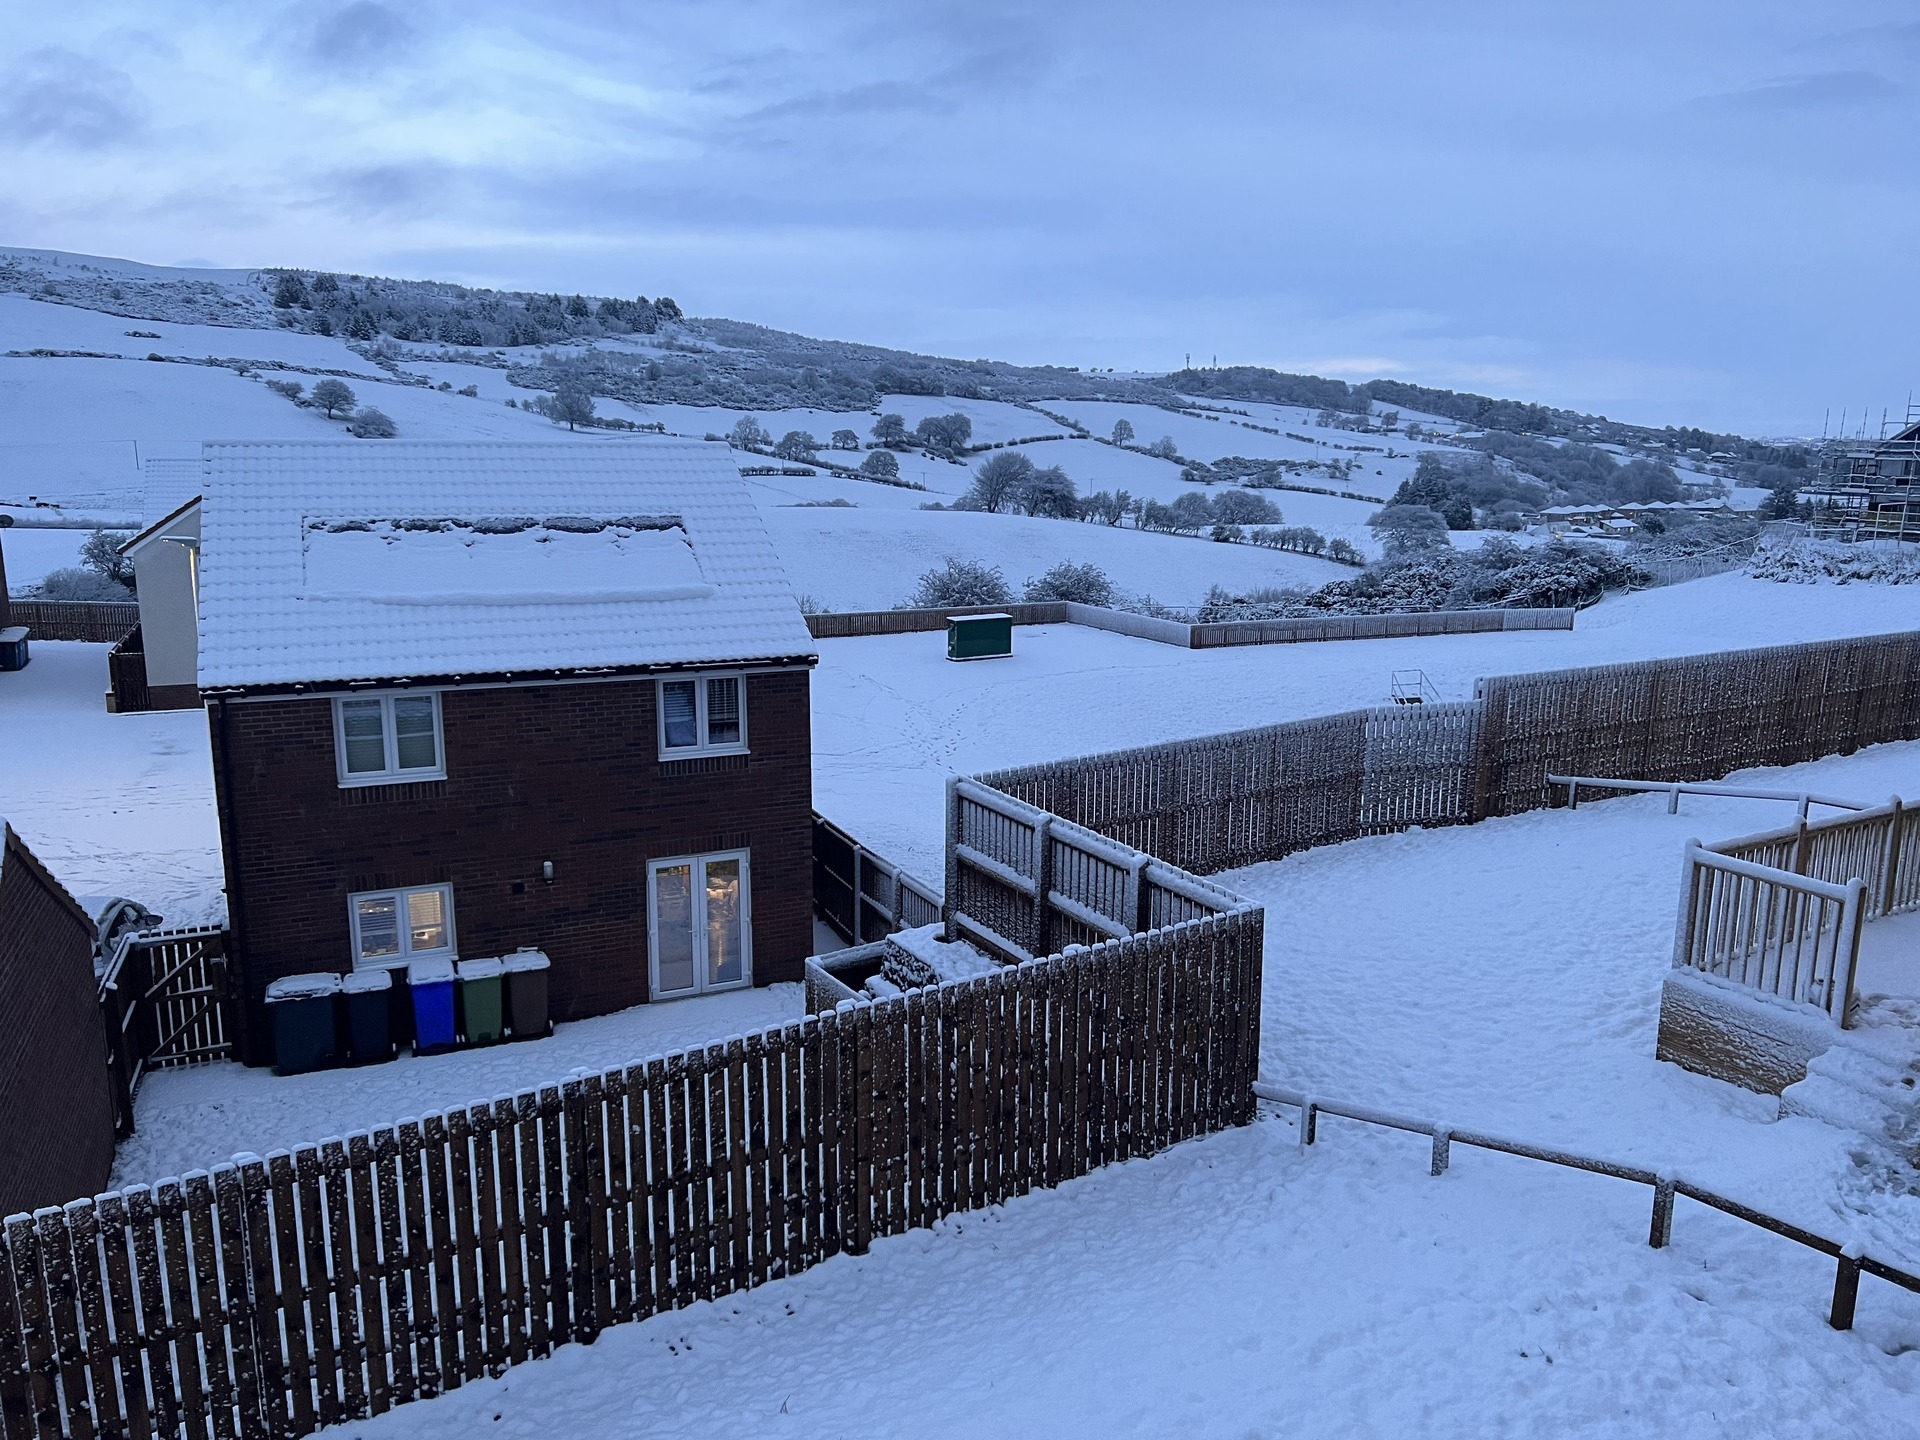 Neilston: Snowfall in Gleniffer Braes.